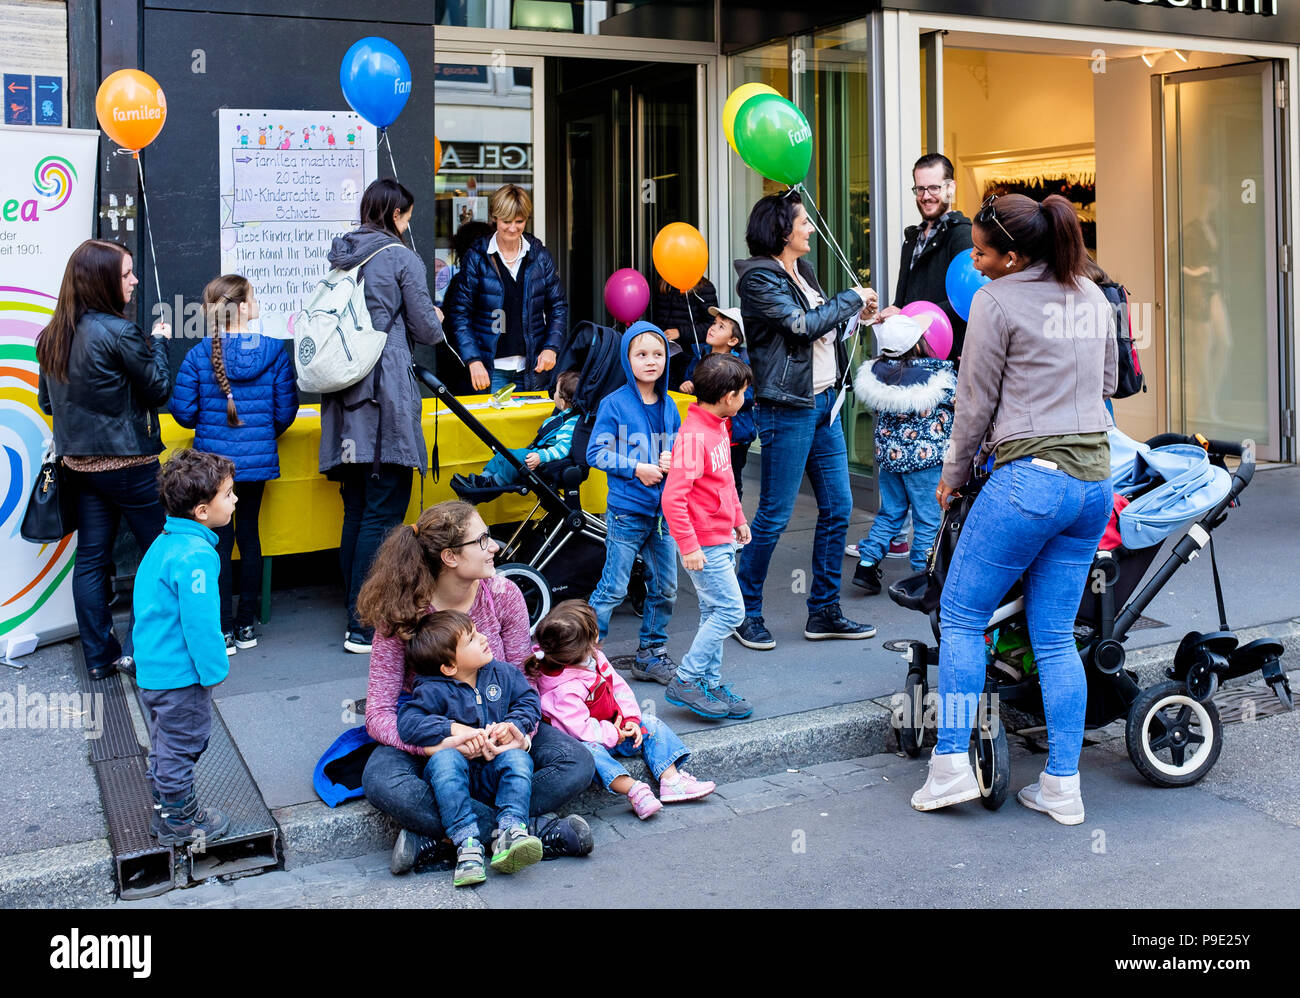 Vente de charité, de ballons de Bâle sur l'asphalte, l'augmentation des fonds, fonds, Familea child care centre, les parents et les enfants, la Suisse, l'Europe, Banque D'Images